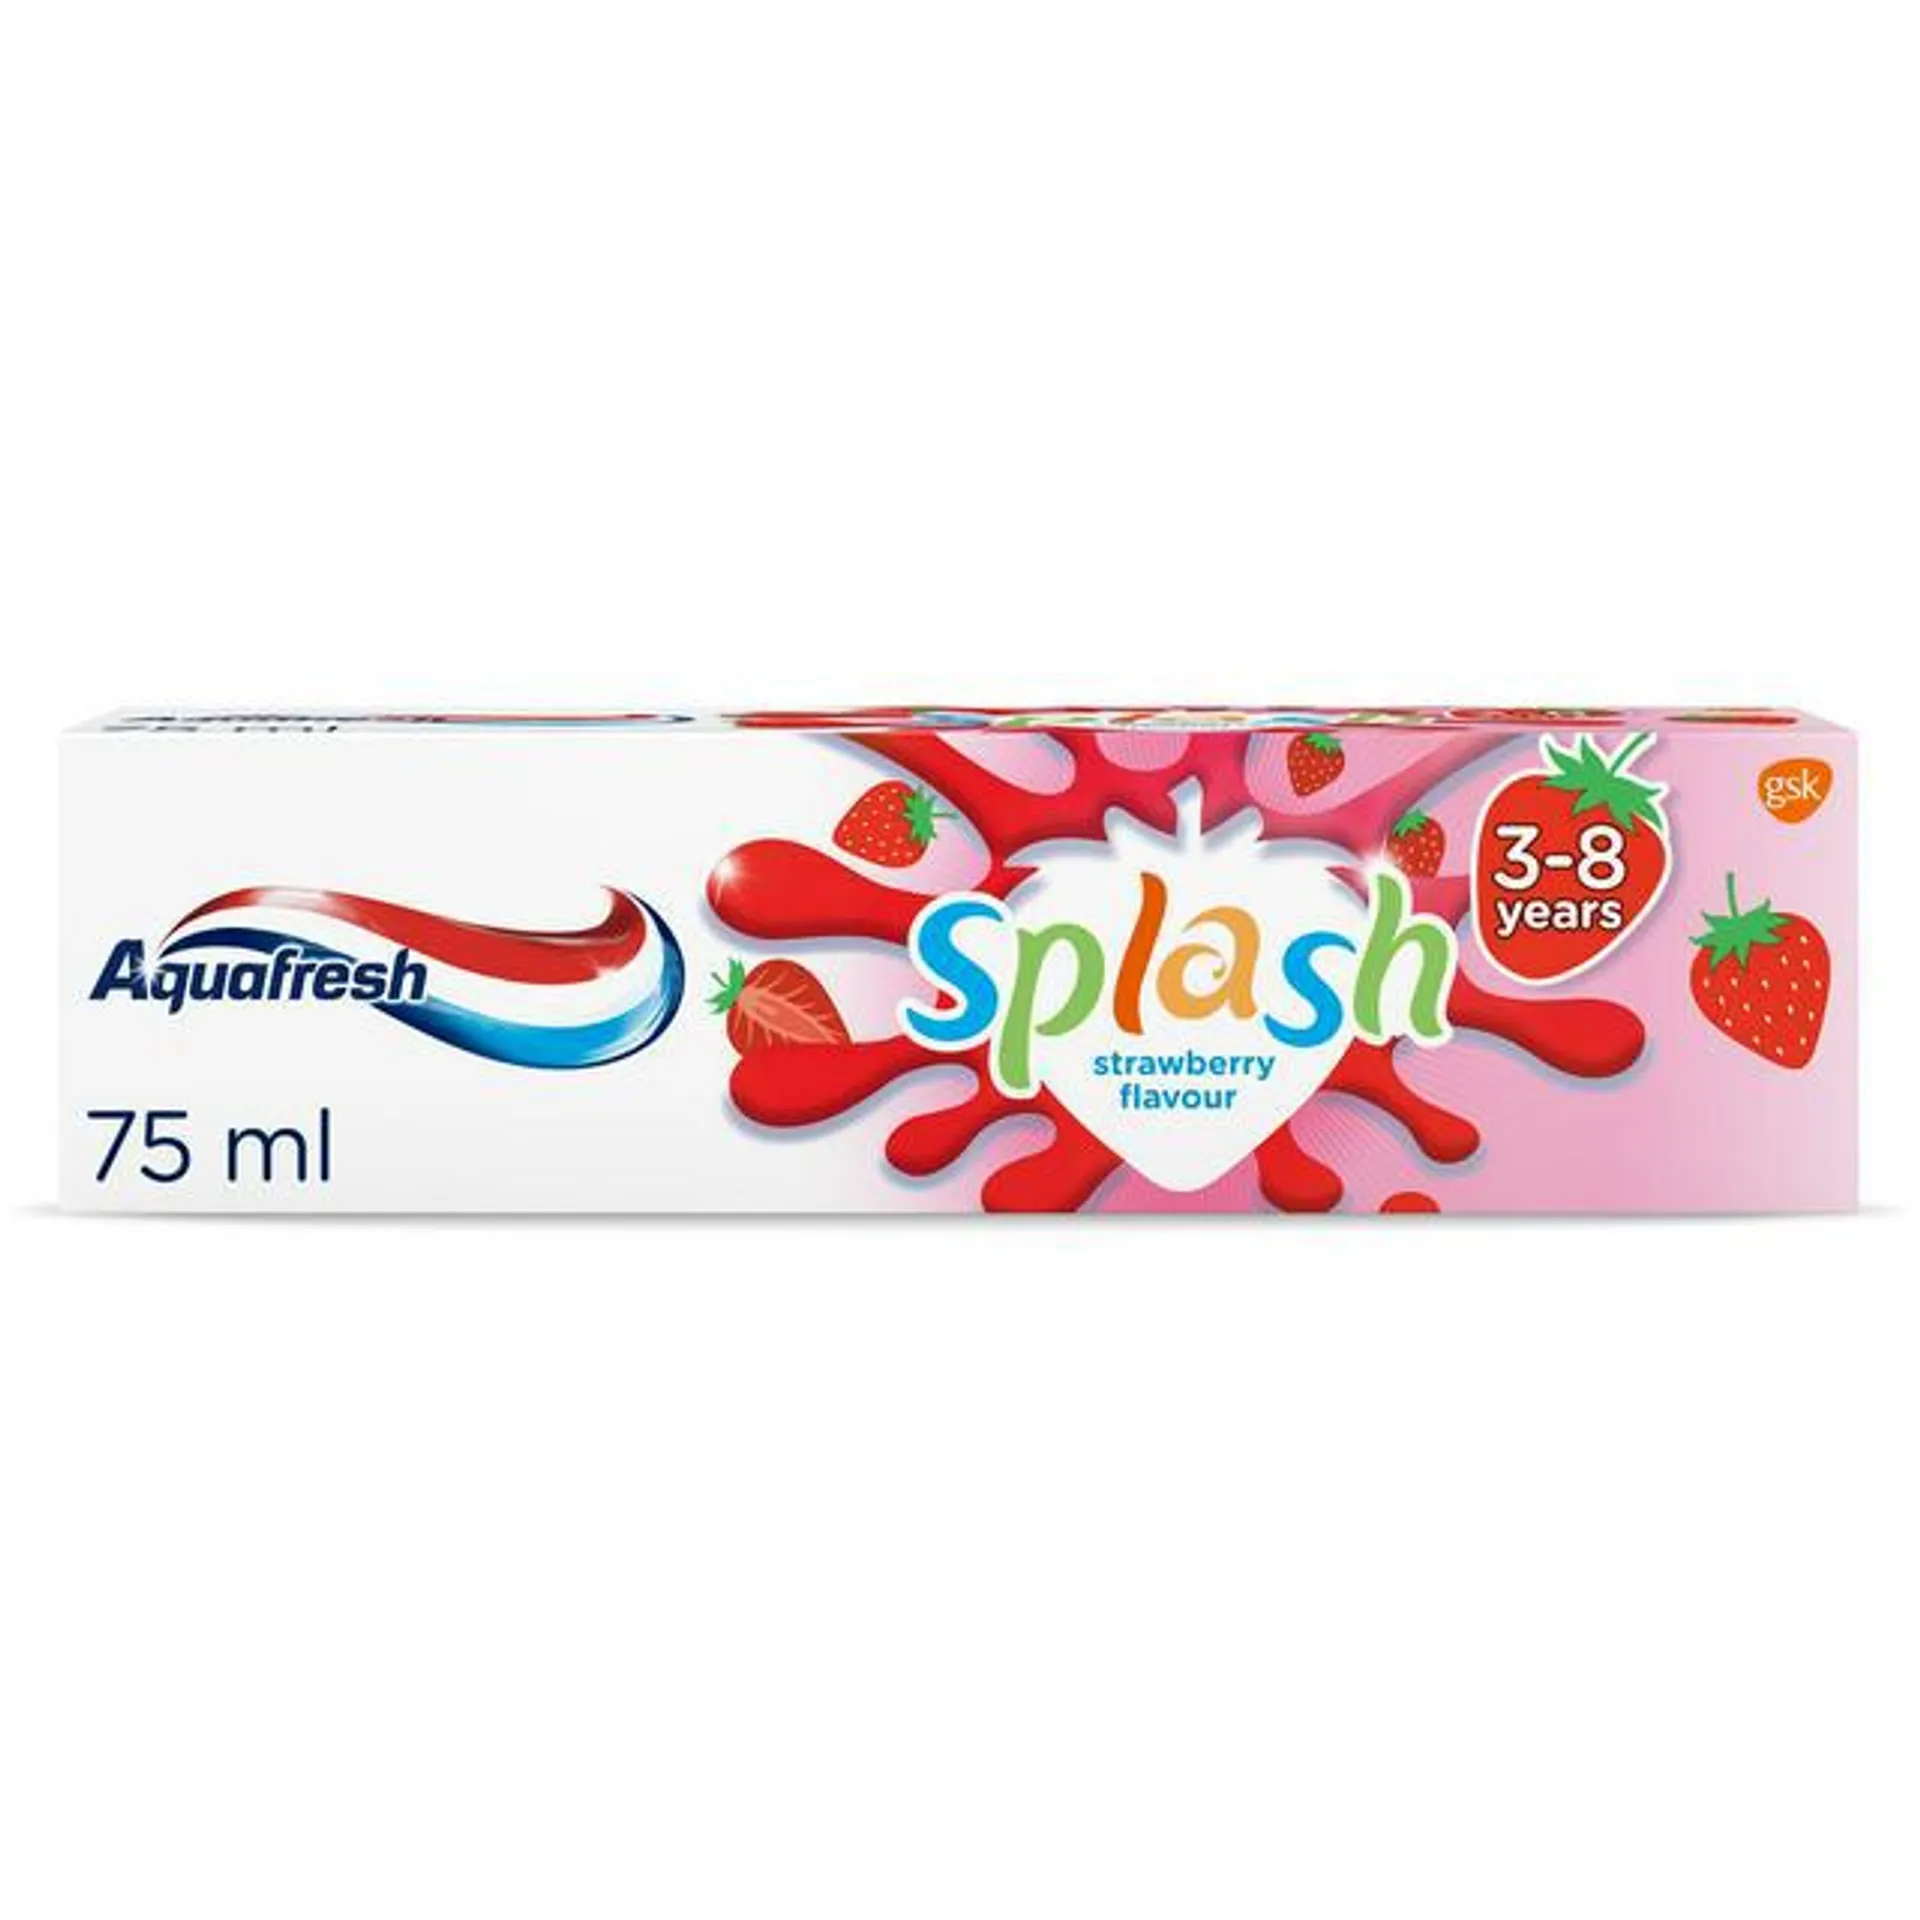 Aquafresh Splash Kids Toothpaste Strawberry Flavour 3-8 years 75ml